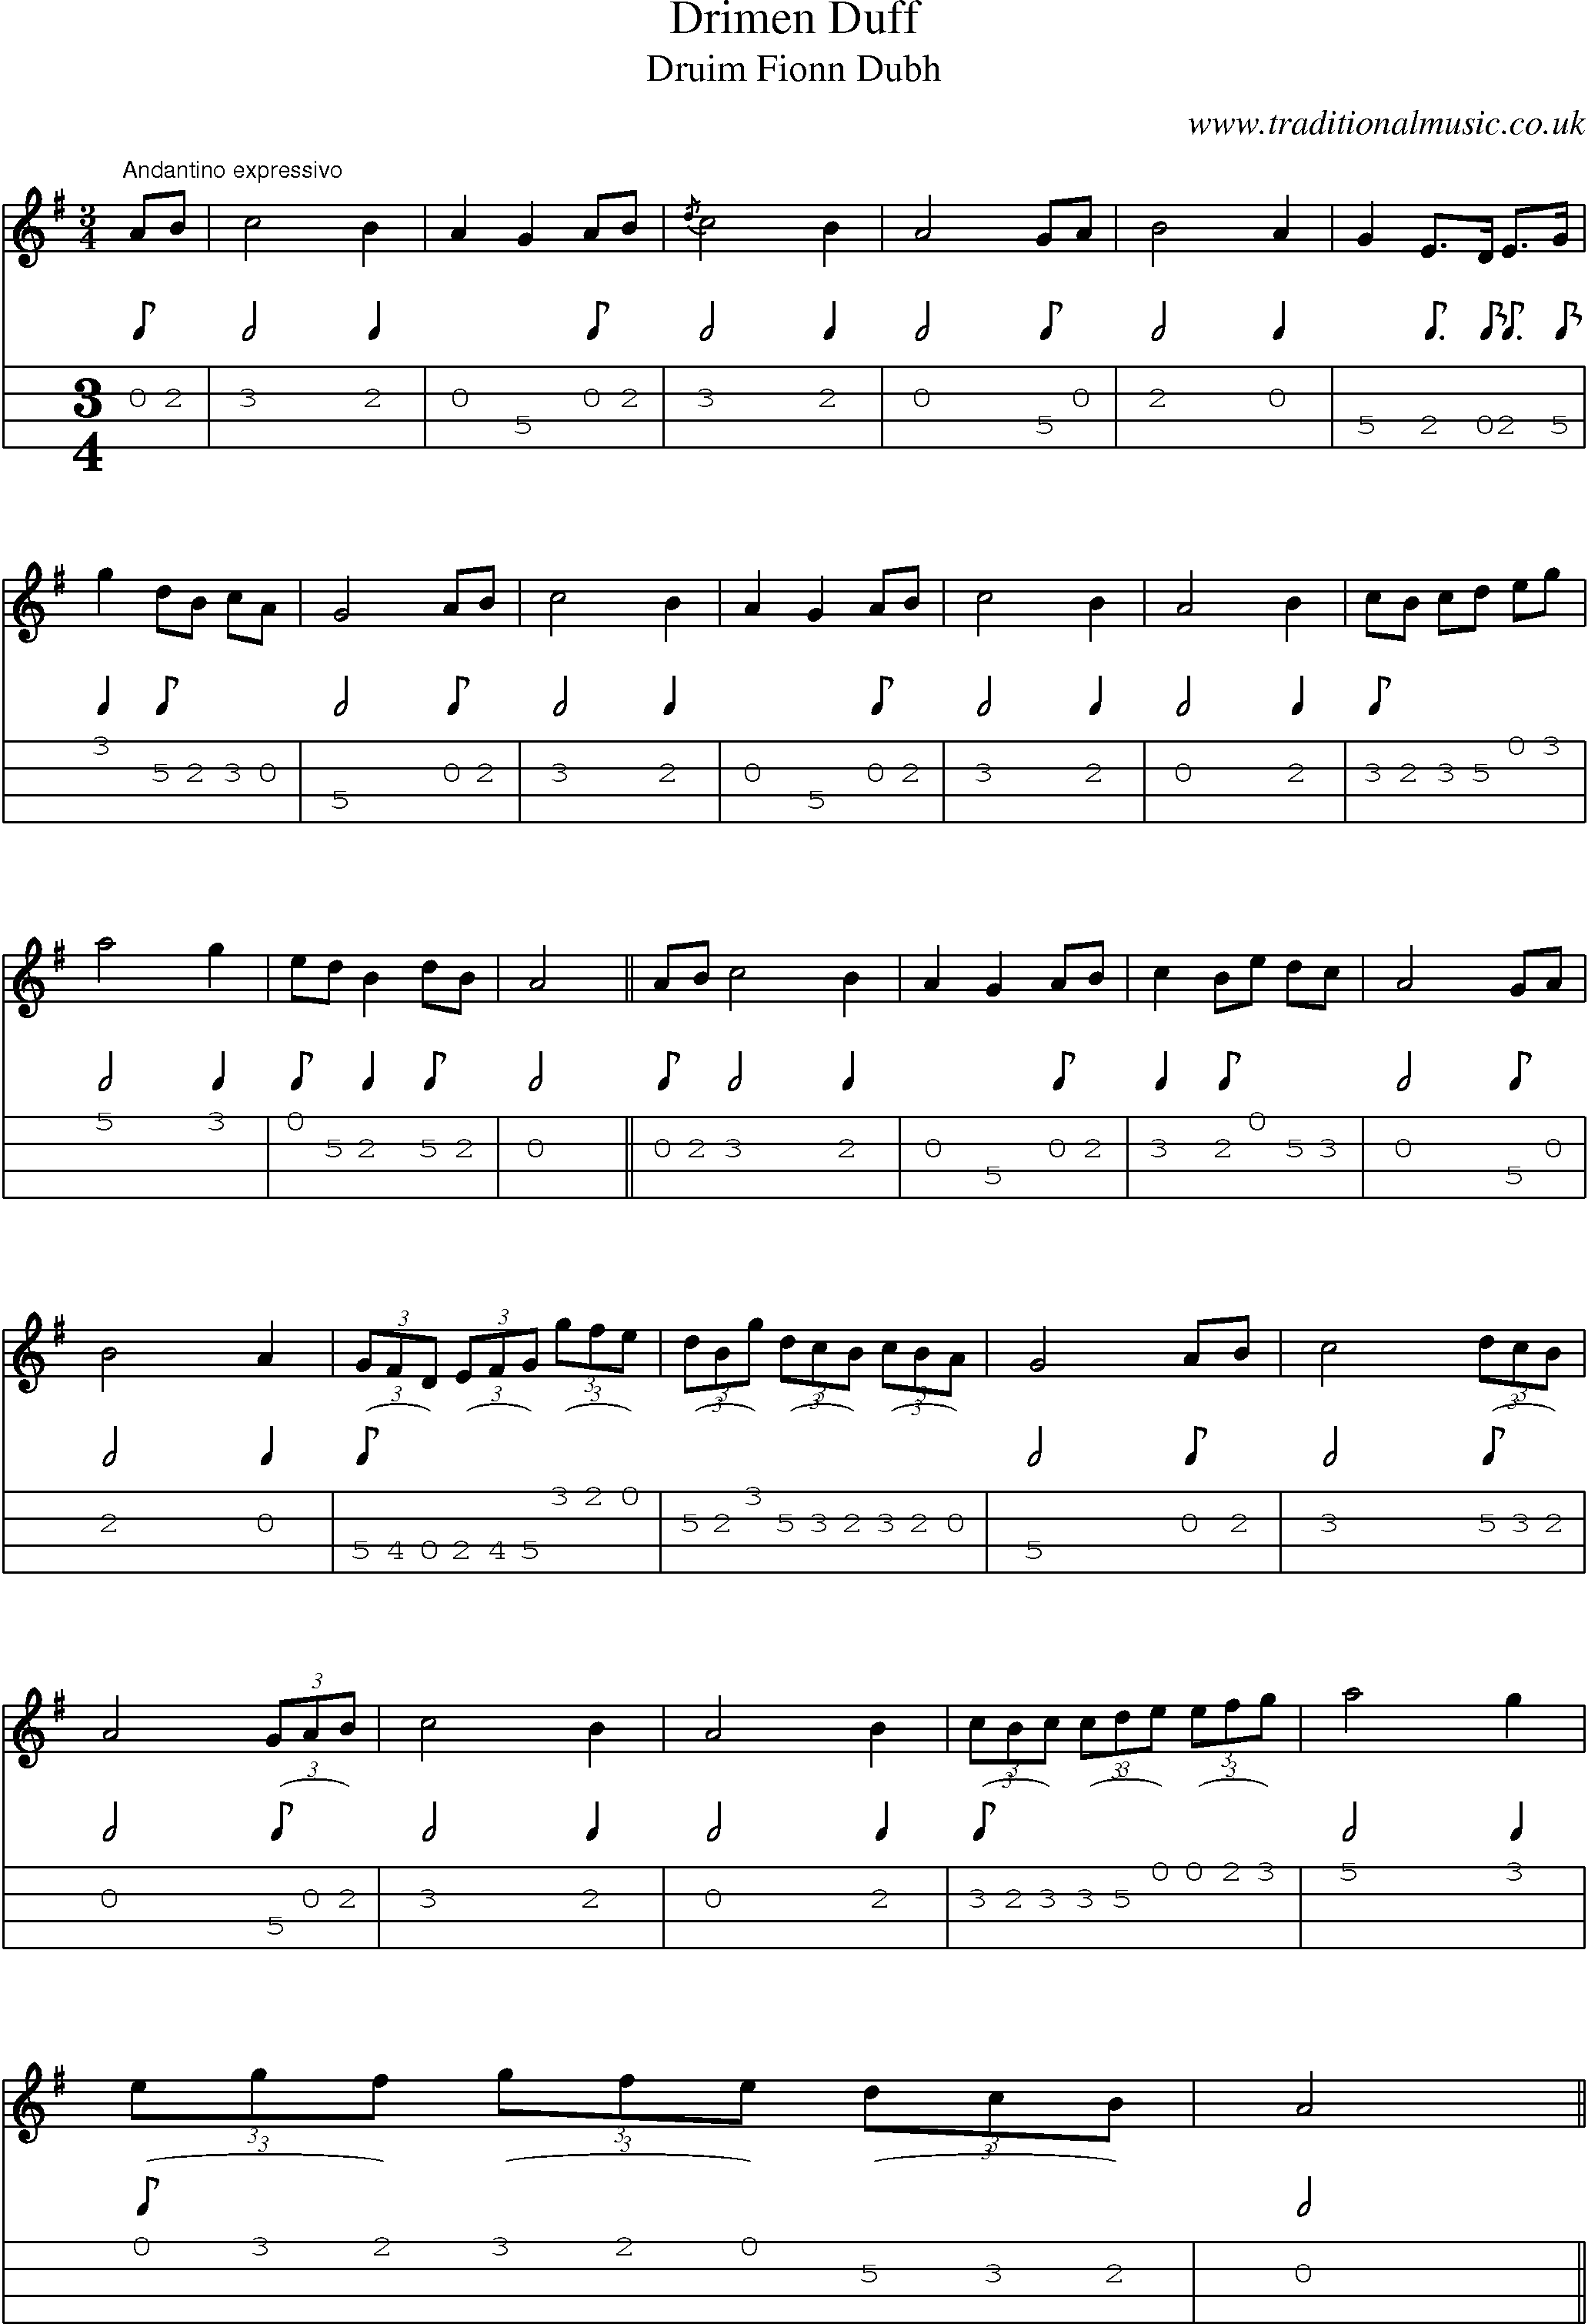 Music Score and Mandolin Tabs for Drimen Duff